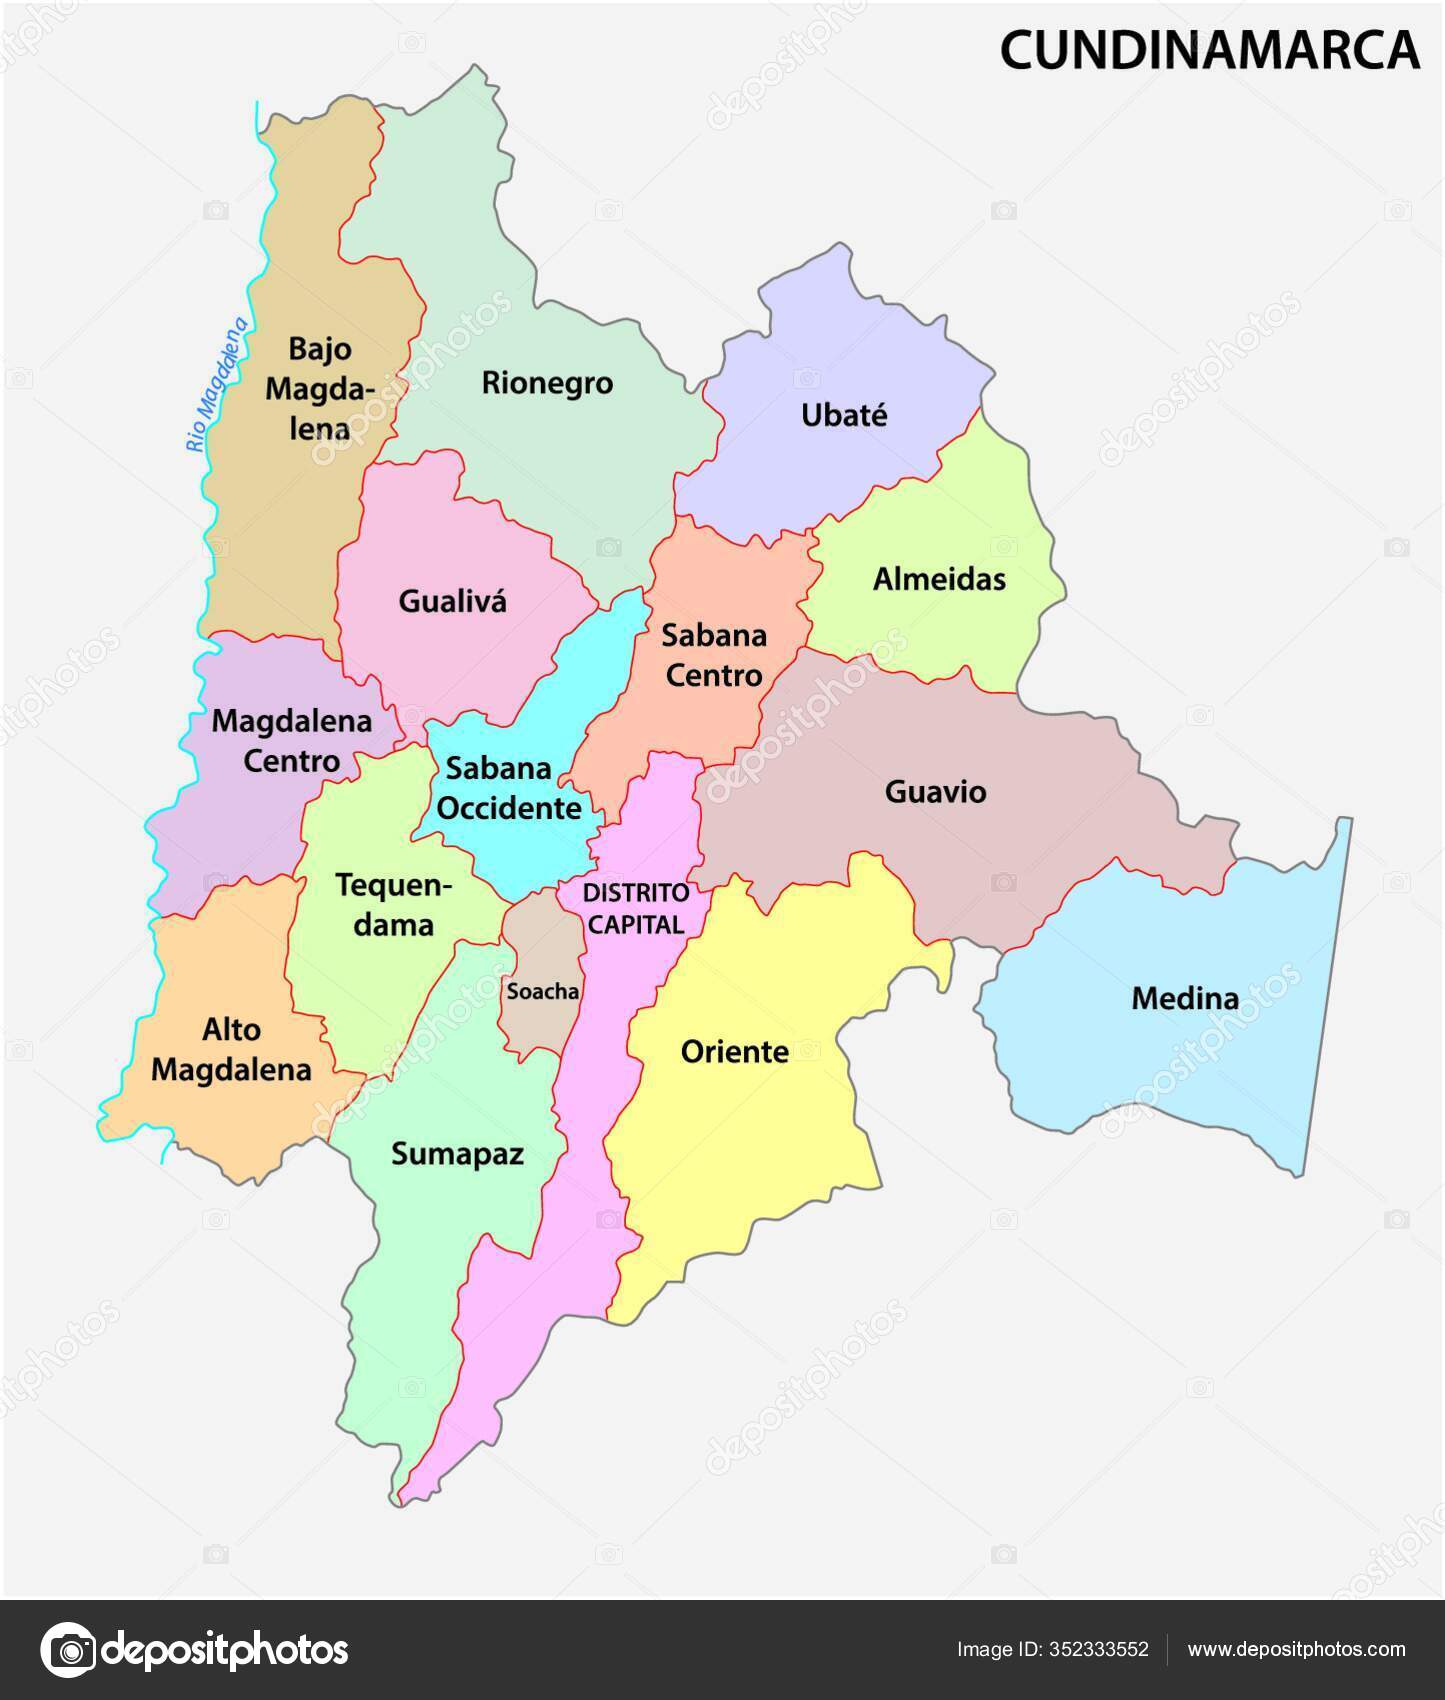 Mapa de Cundinamarca y Boyacá